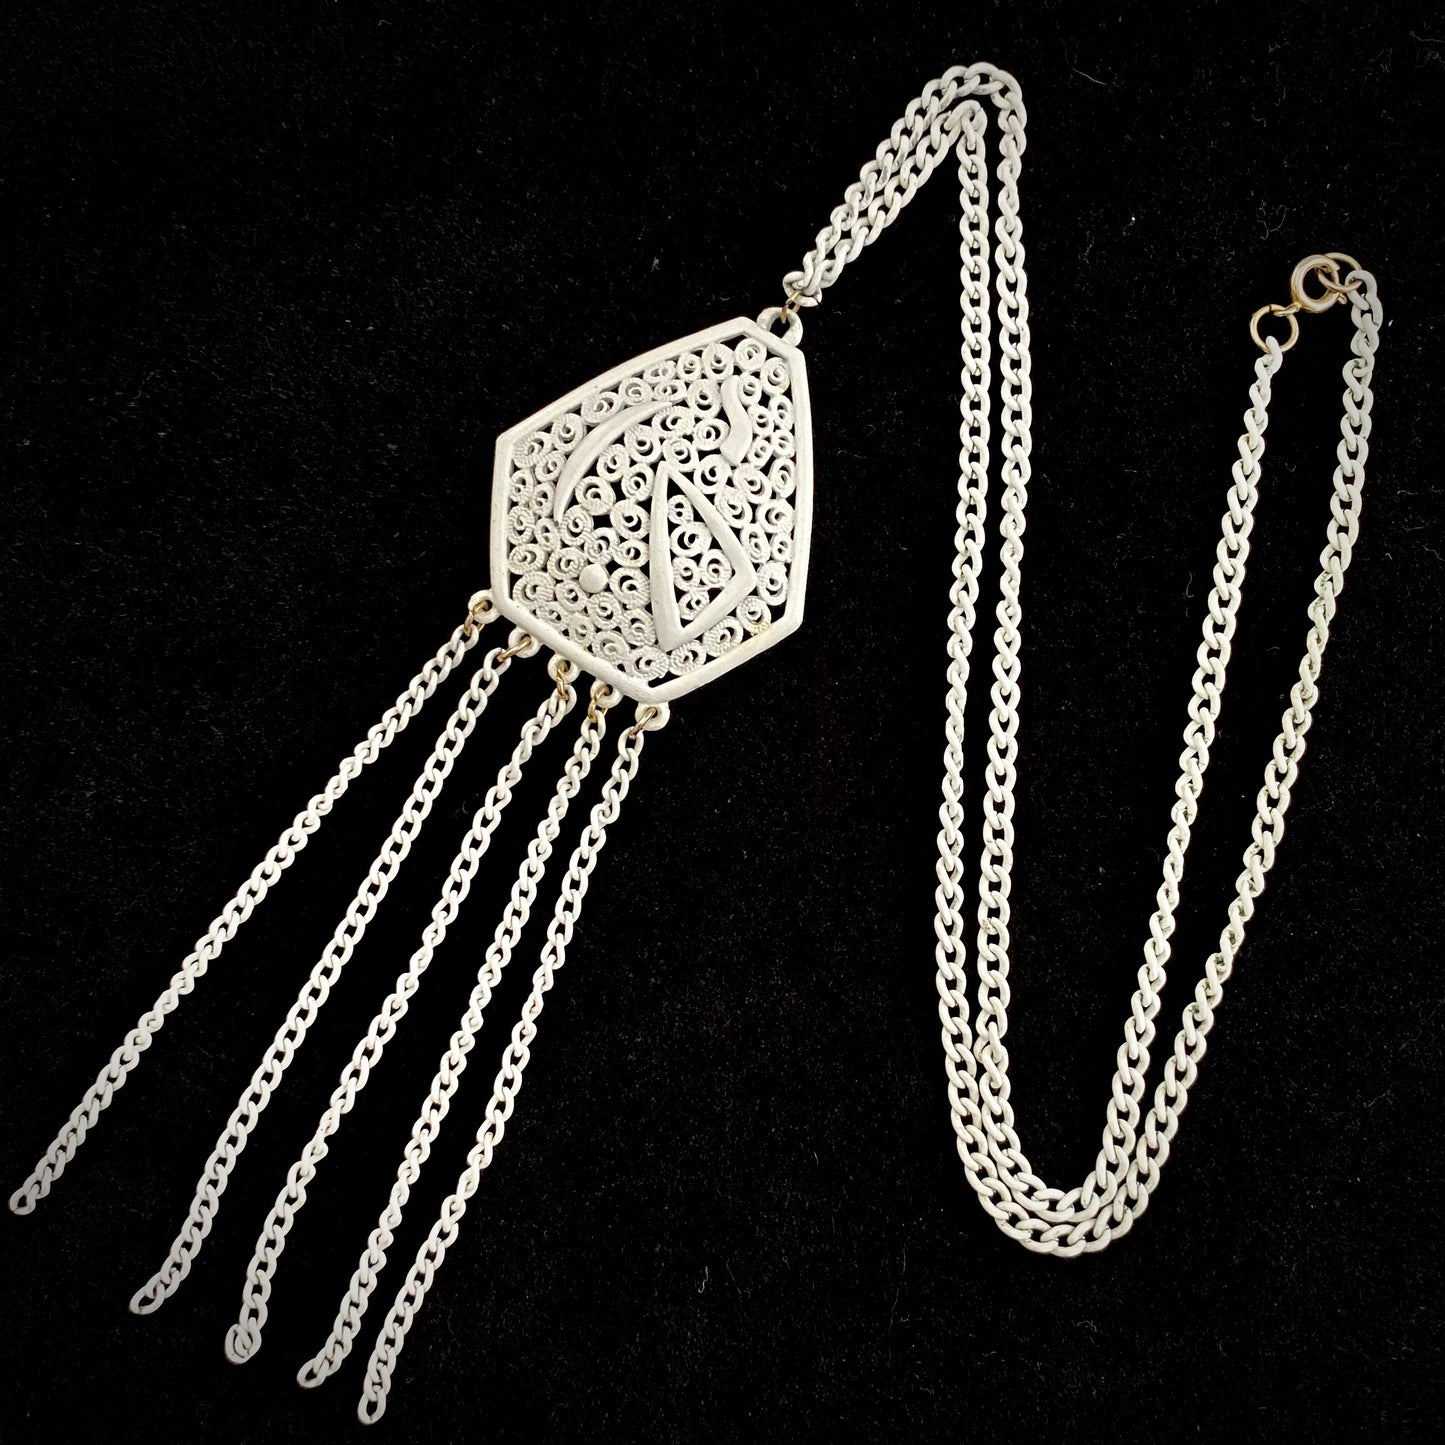 1960s Enamel Pendant Necklace